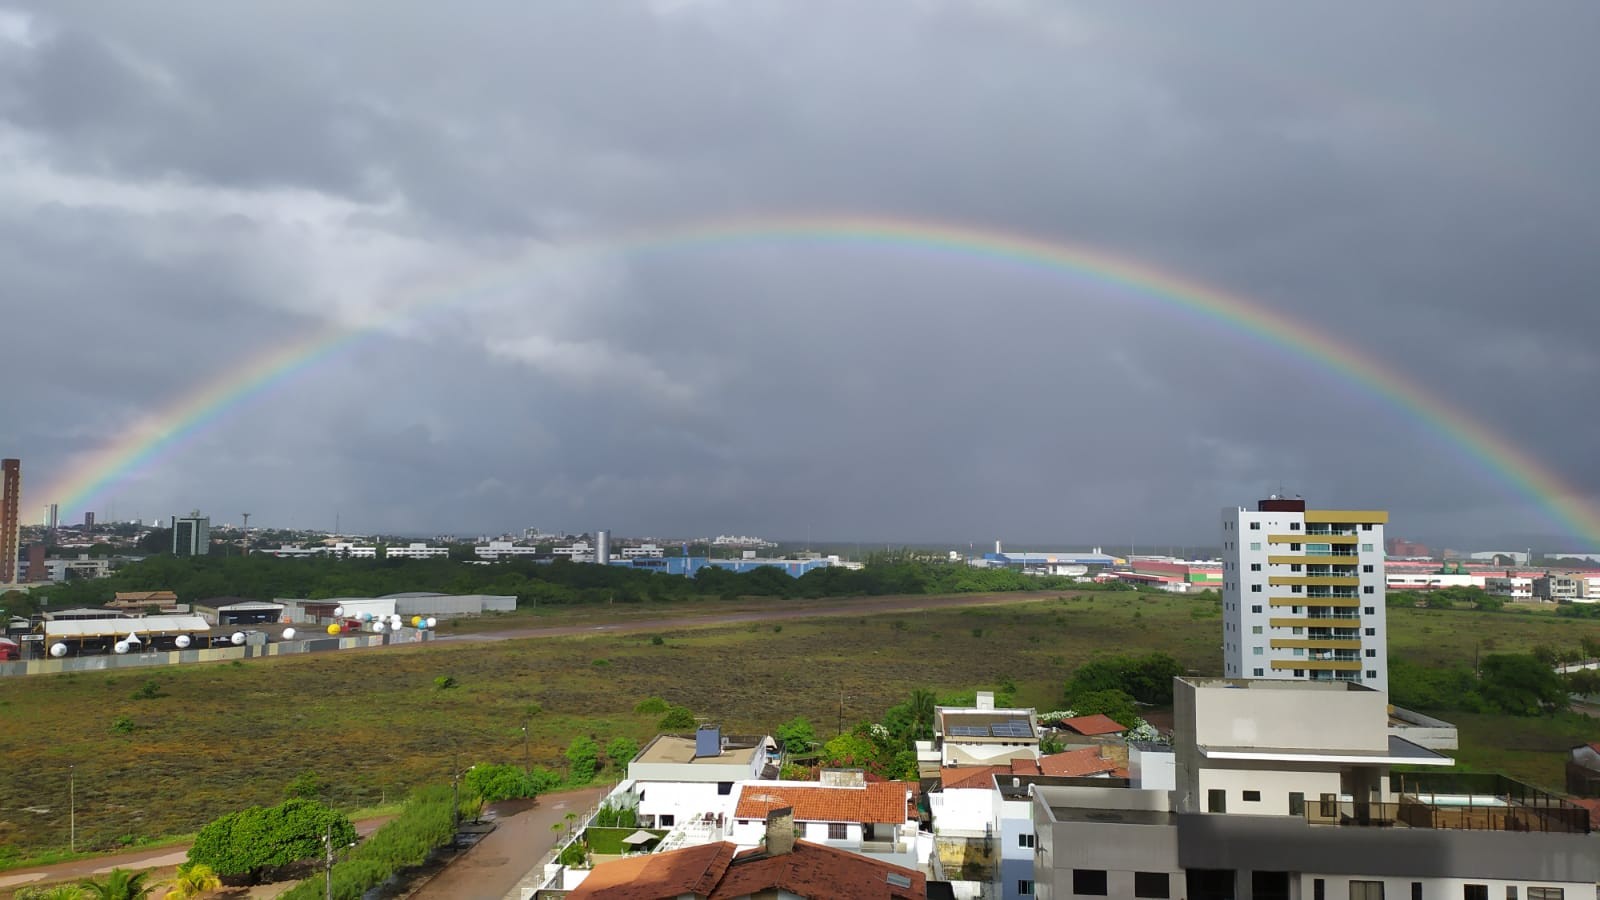 Inmet emite alerta de chuvas intensas para João Pessoa e outras 118 cidades da Paraíba; veja lista